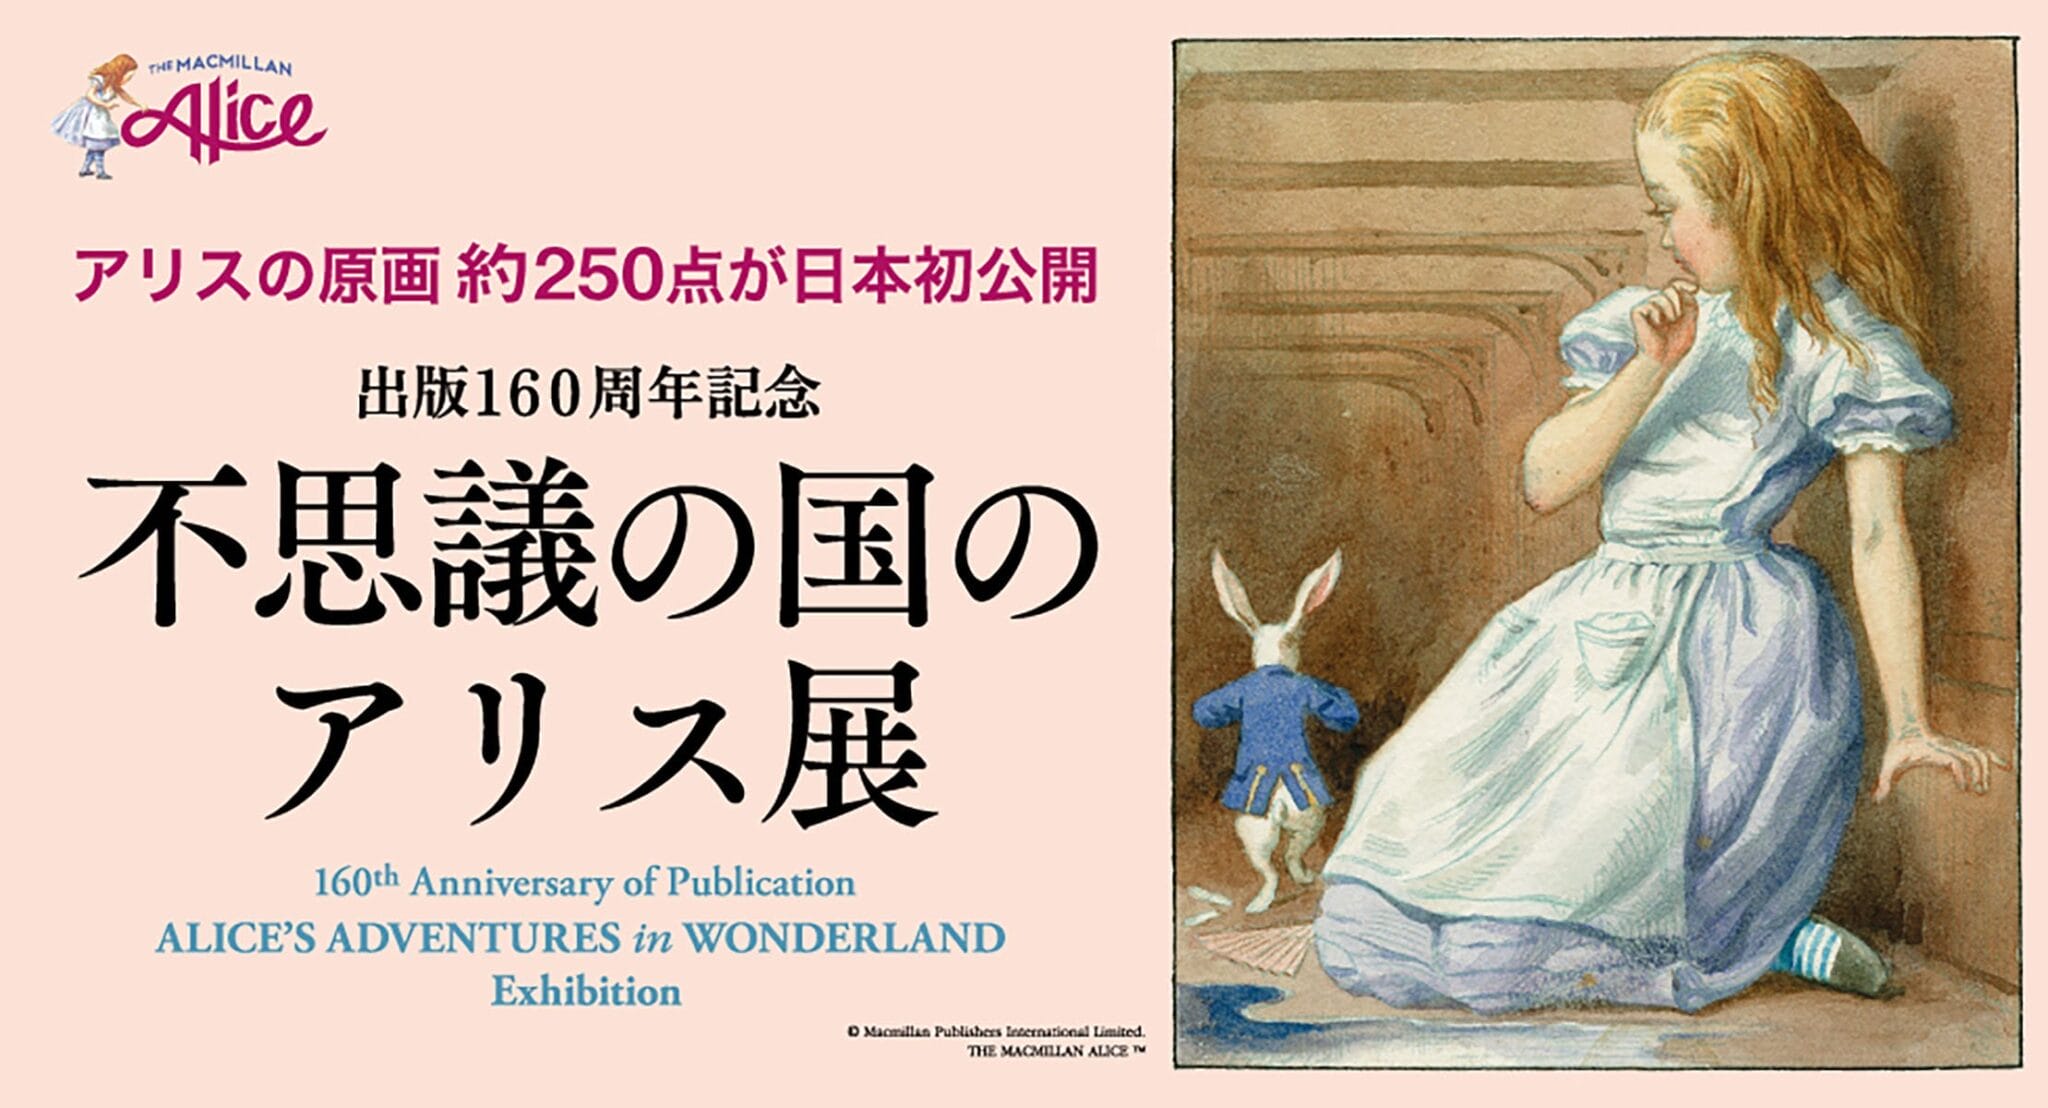 【プレスリリース】｢不思議の国のアリス展｣ ４月17日(水)より横浜高島屋ギャラリーにて開催